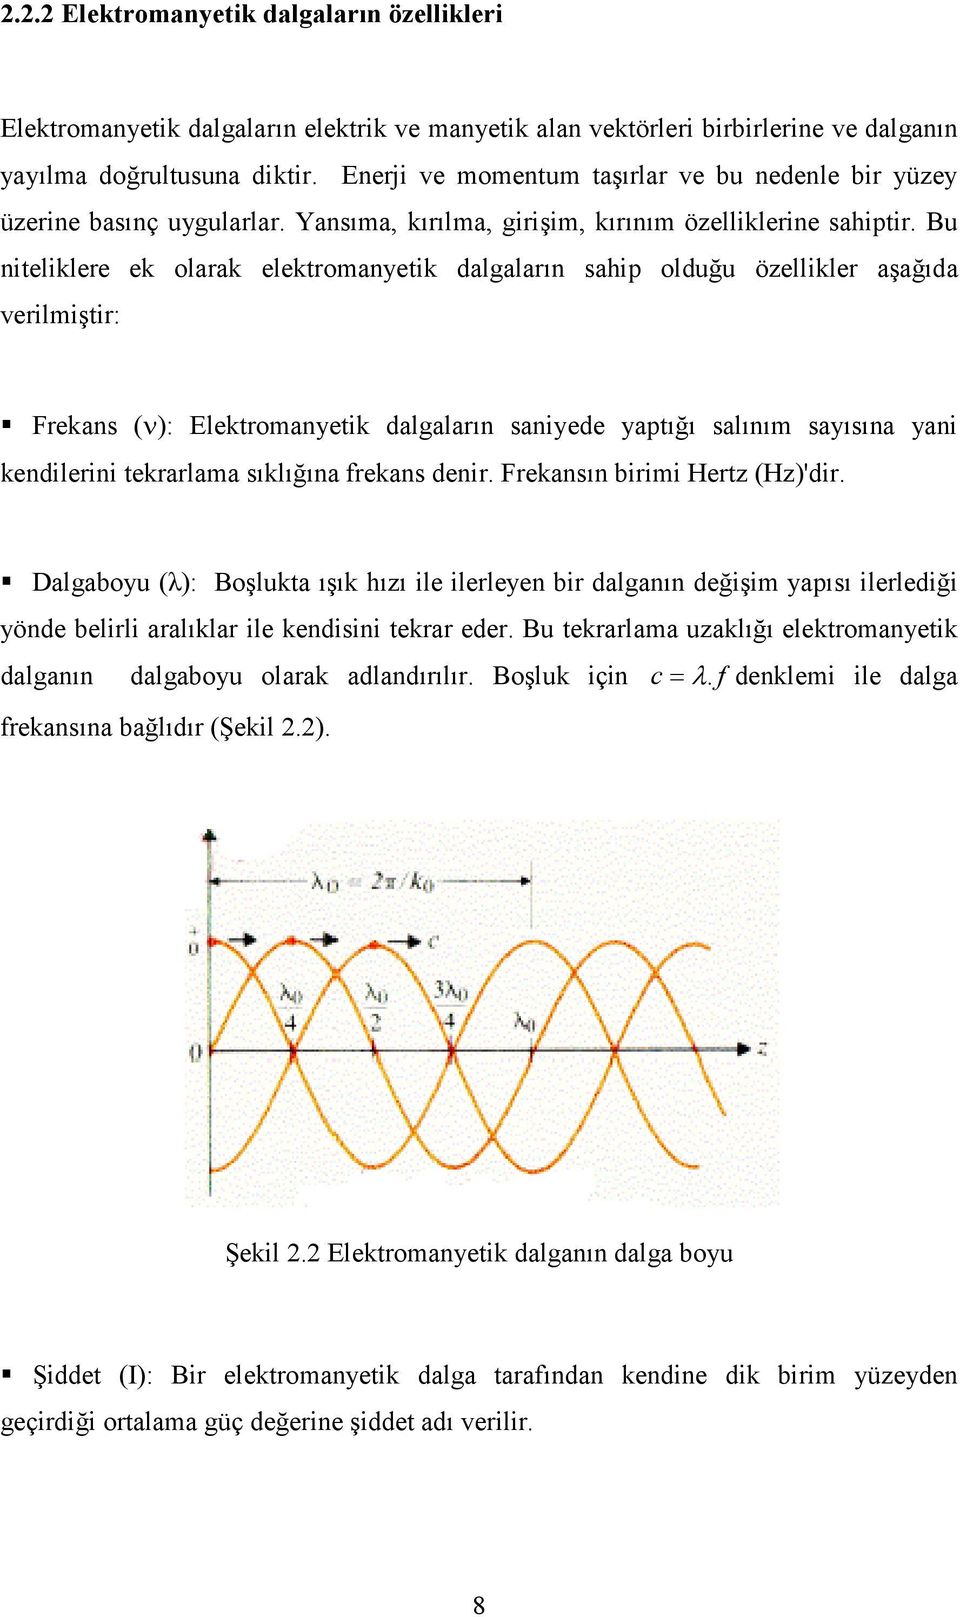 Bu niteliklere ek olarak elektromanyetik dalgaların sahip olduğu özellikler aşağıda verilmiştir: Frekans (ν): Elektromanyetik dalgaların saniyede yaptığı salınım sayısına yani kendilerini tekrarlama